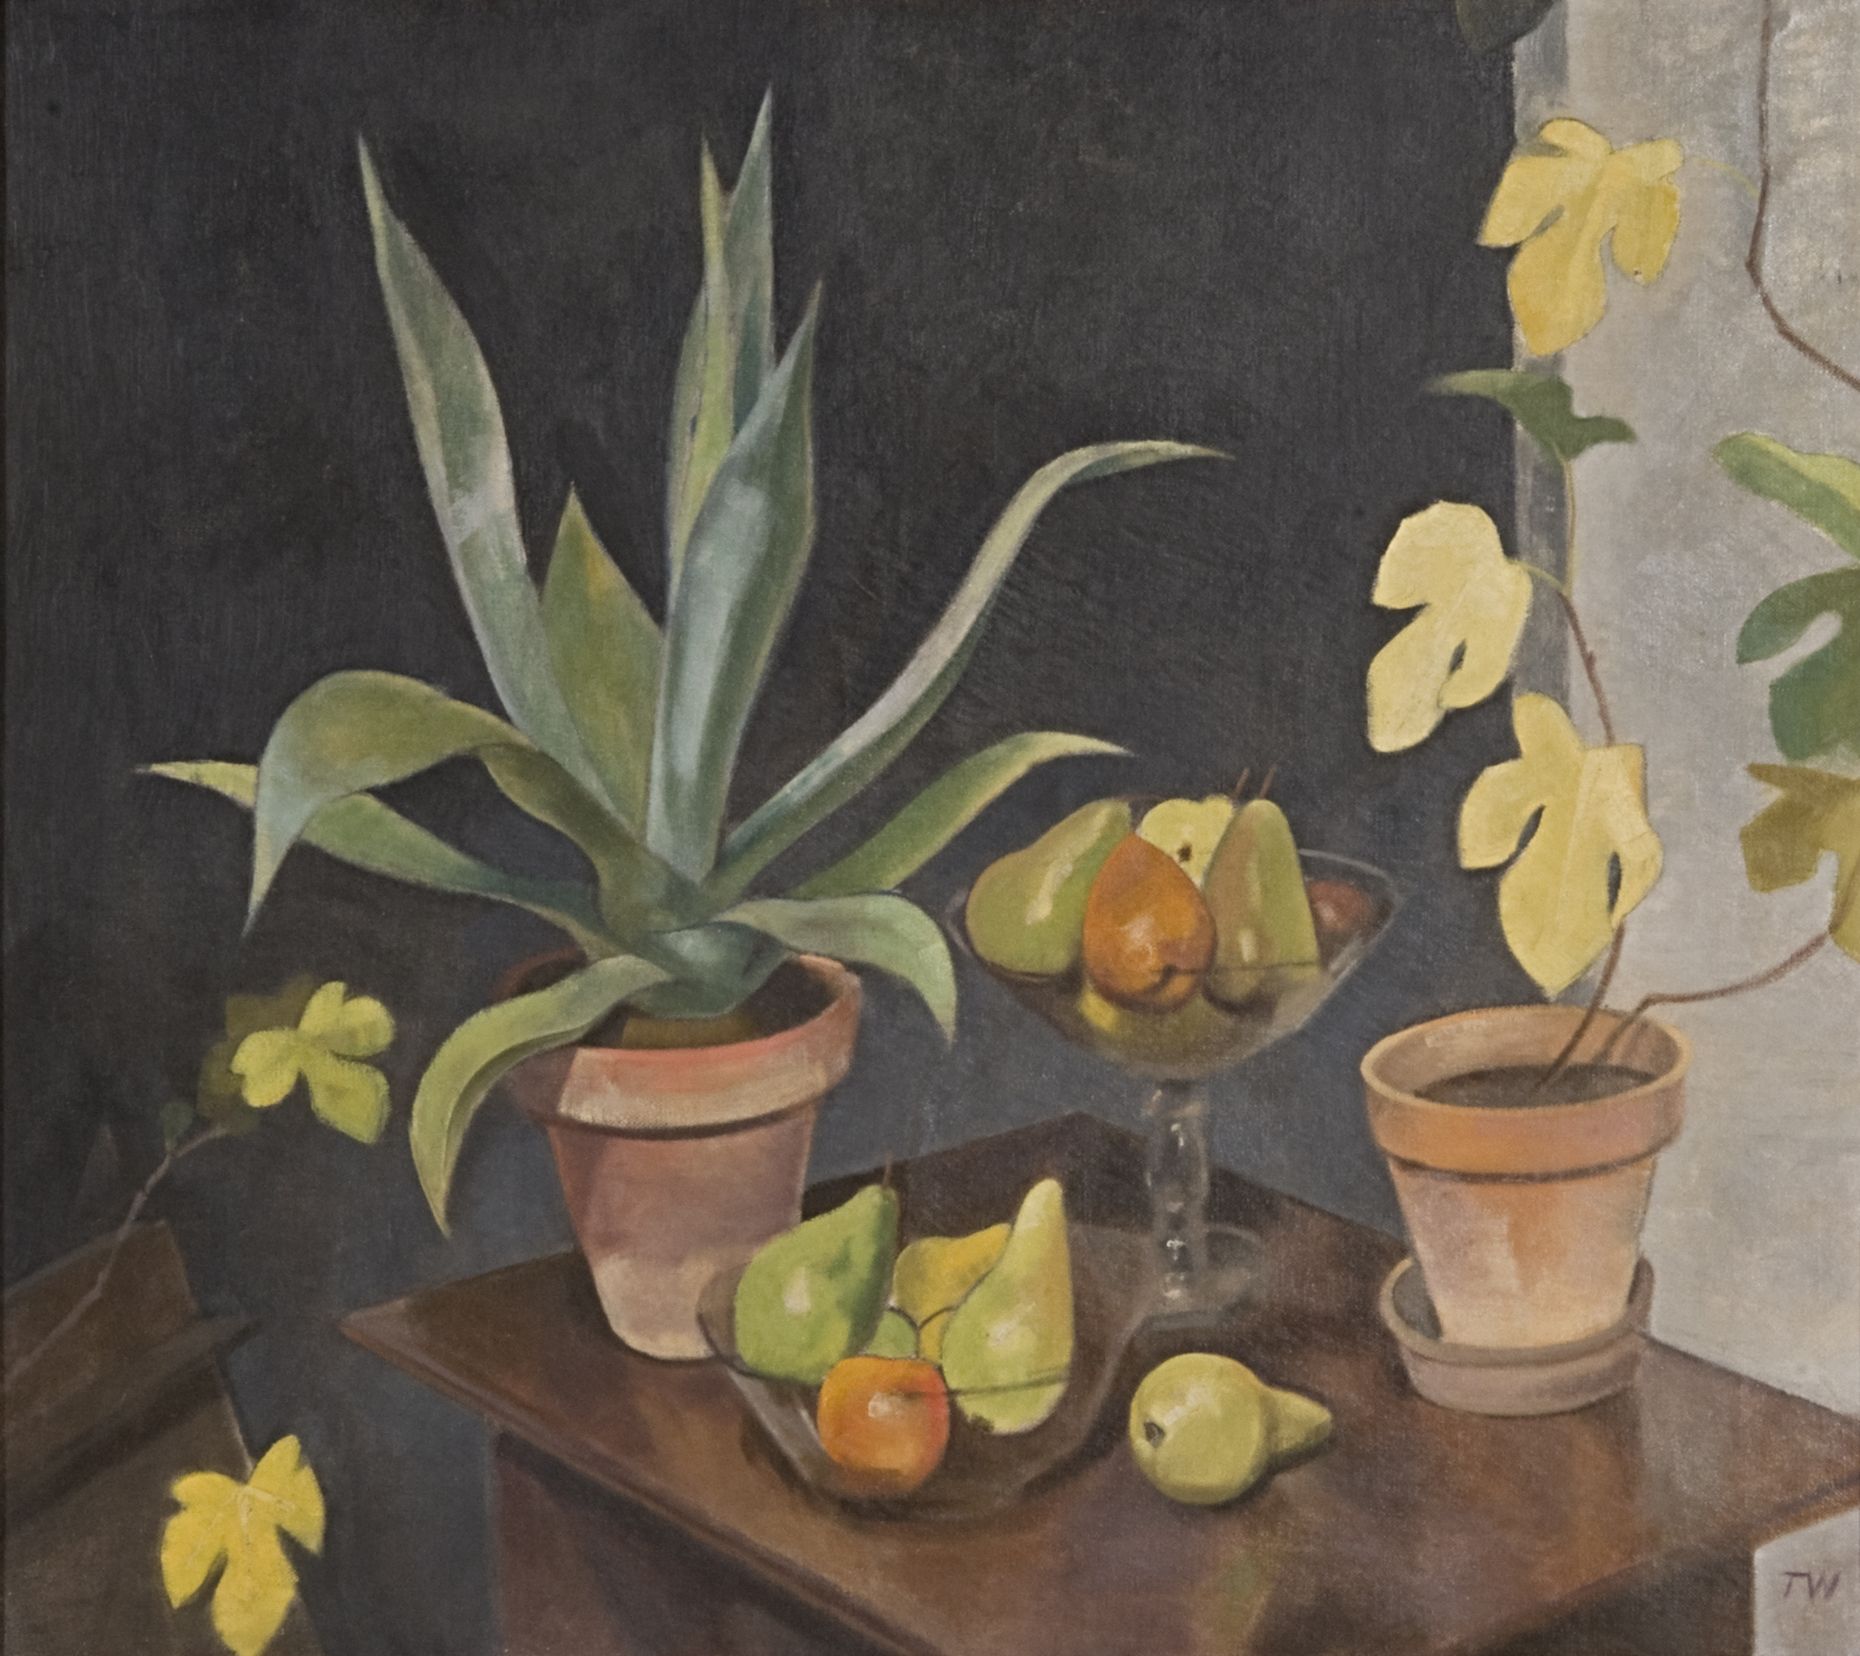 Gemälde von Theodor Werner, Öl auf Leinwand, 90 x 101 cm